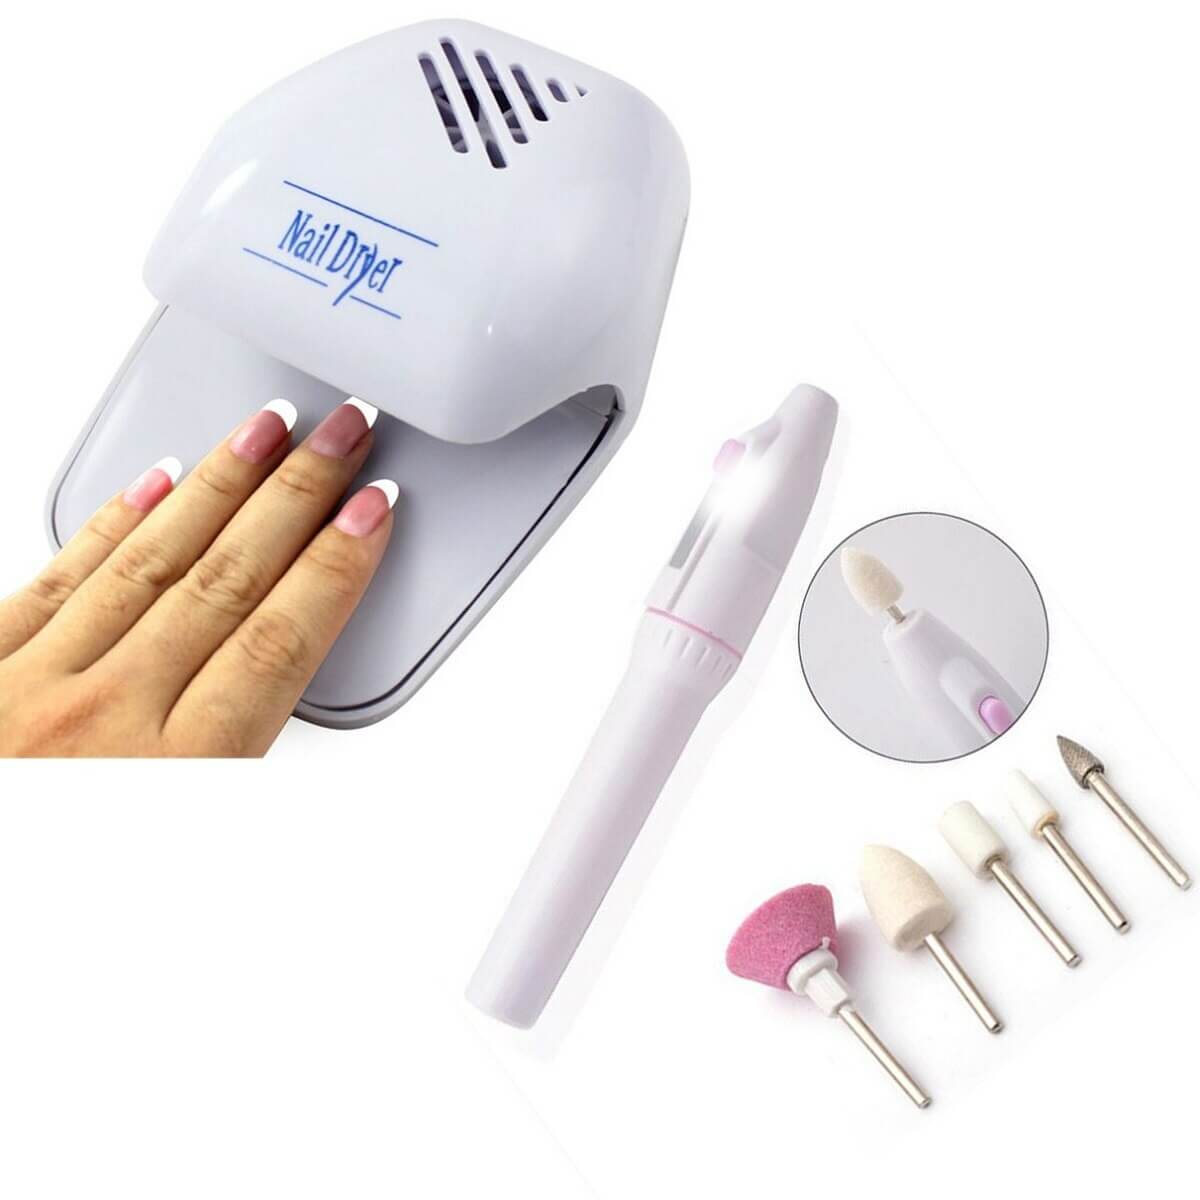 Kit Manicure Profissional: Unhas impecáveis com secagem rápida e acessórios versáteis.